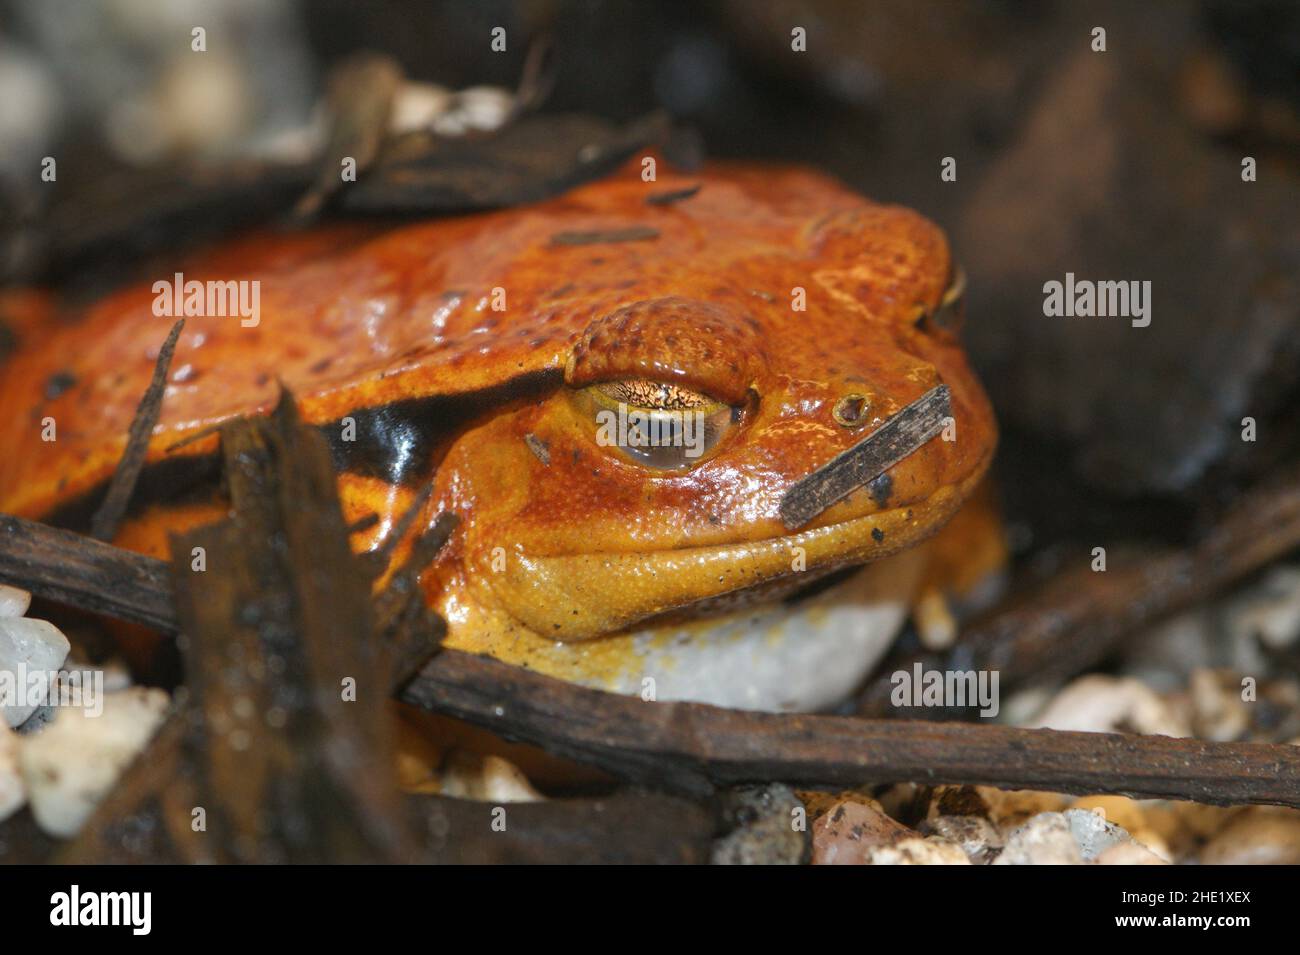 Primo piano su un adulto Dyscophus guineti arancione, rana di pomodoro, seduto a terra Foto Stock